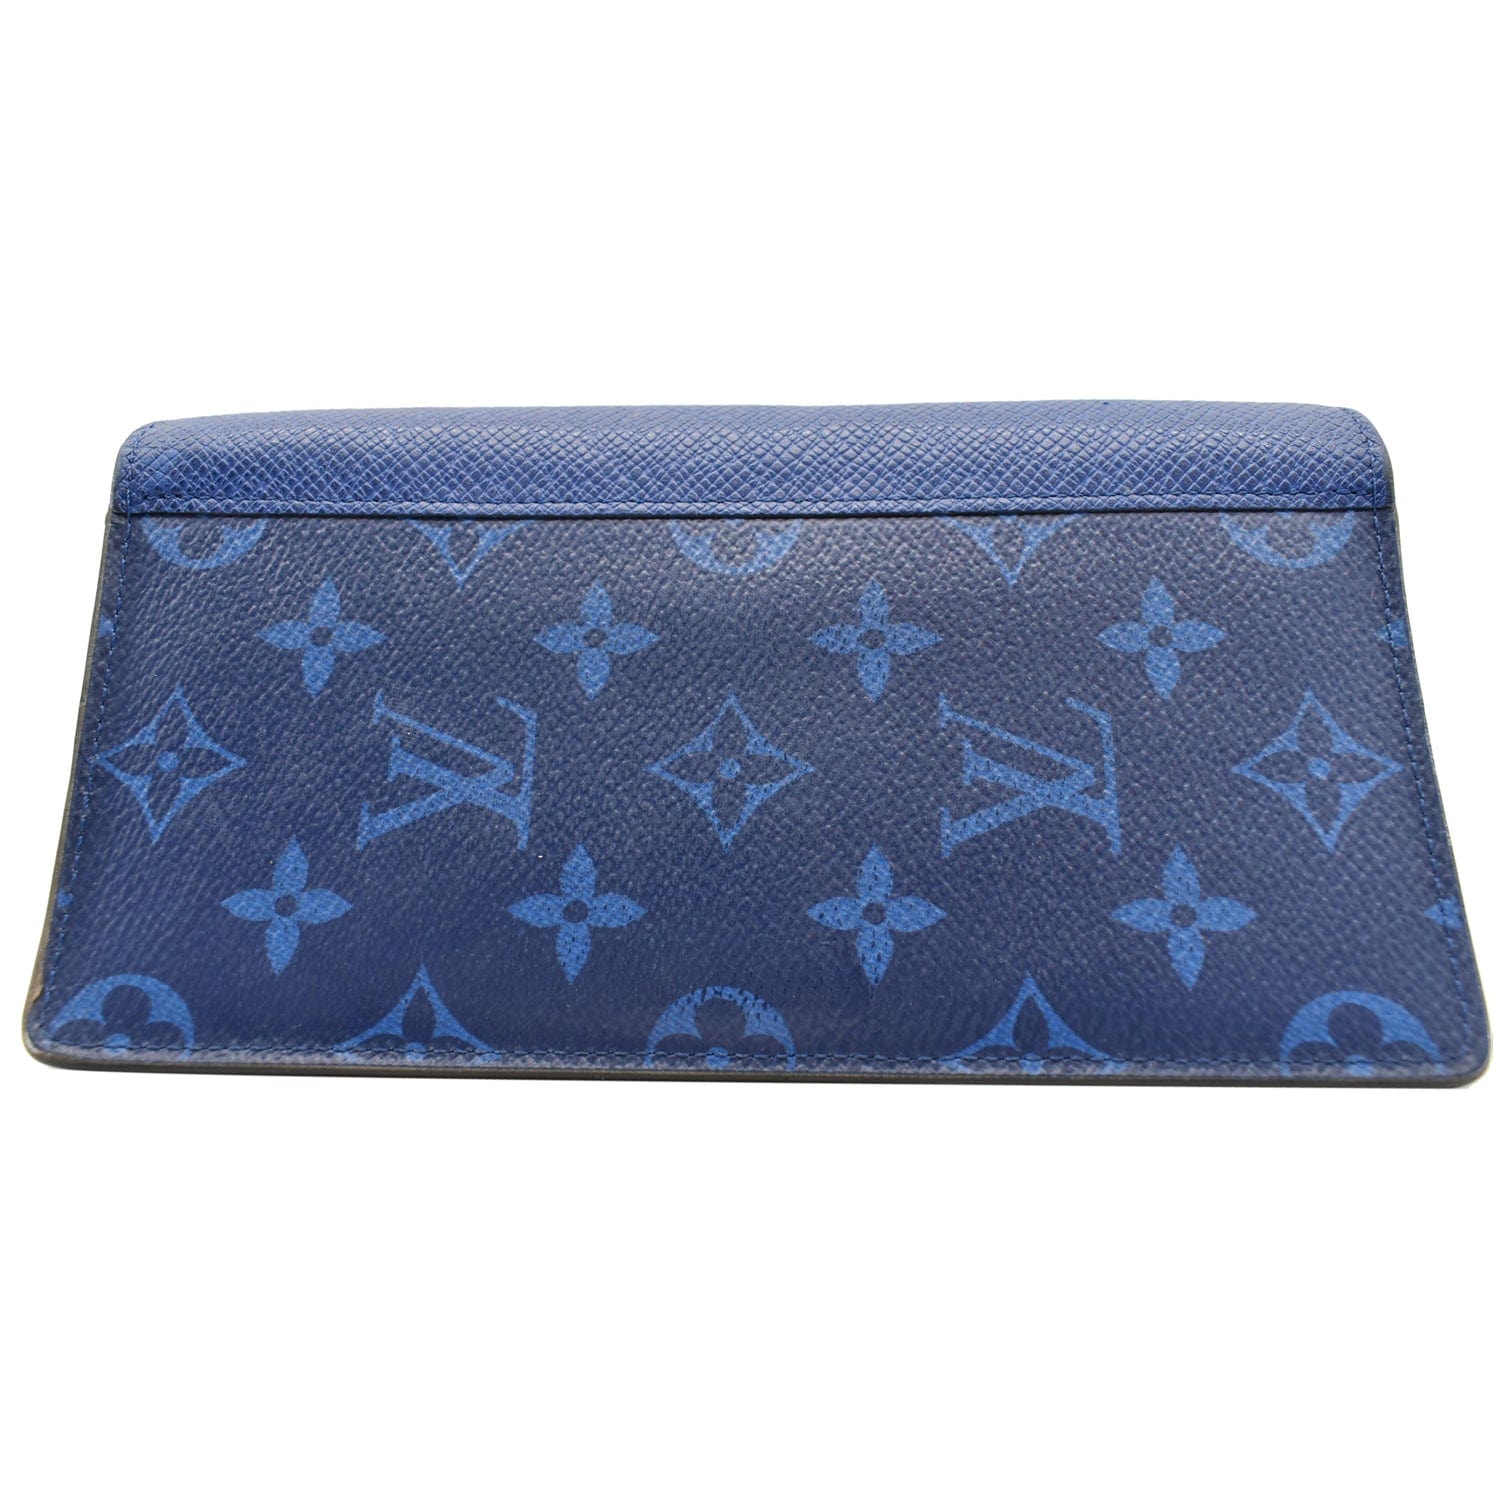 Louis Vuitton Brazza Wallet Monogram Canvas - ShopStyle